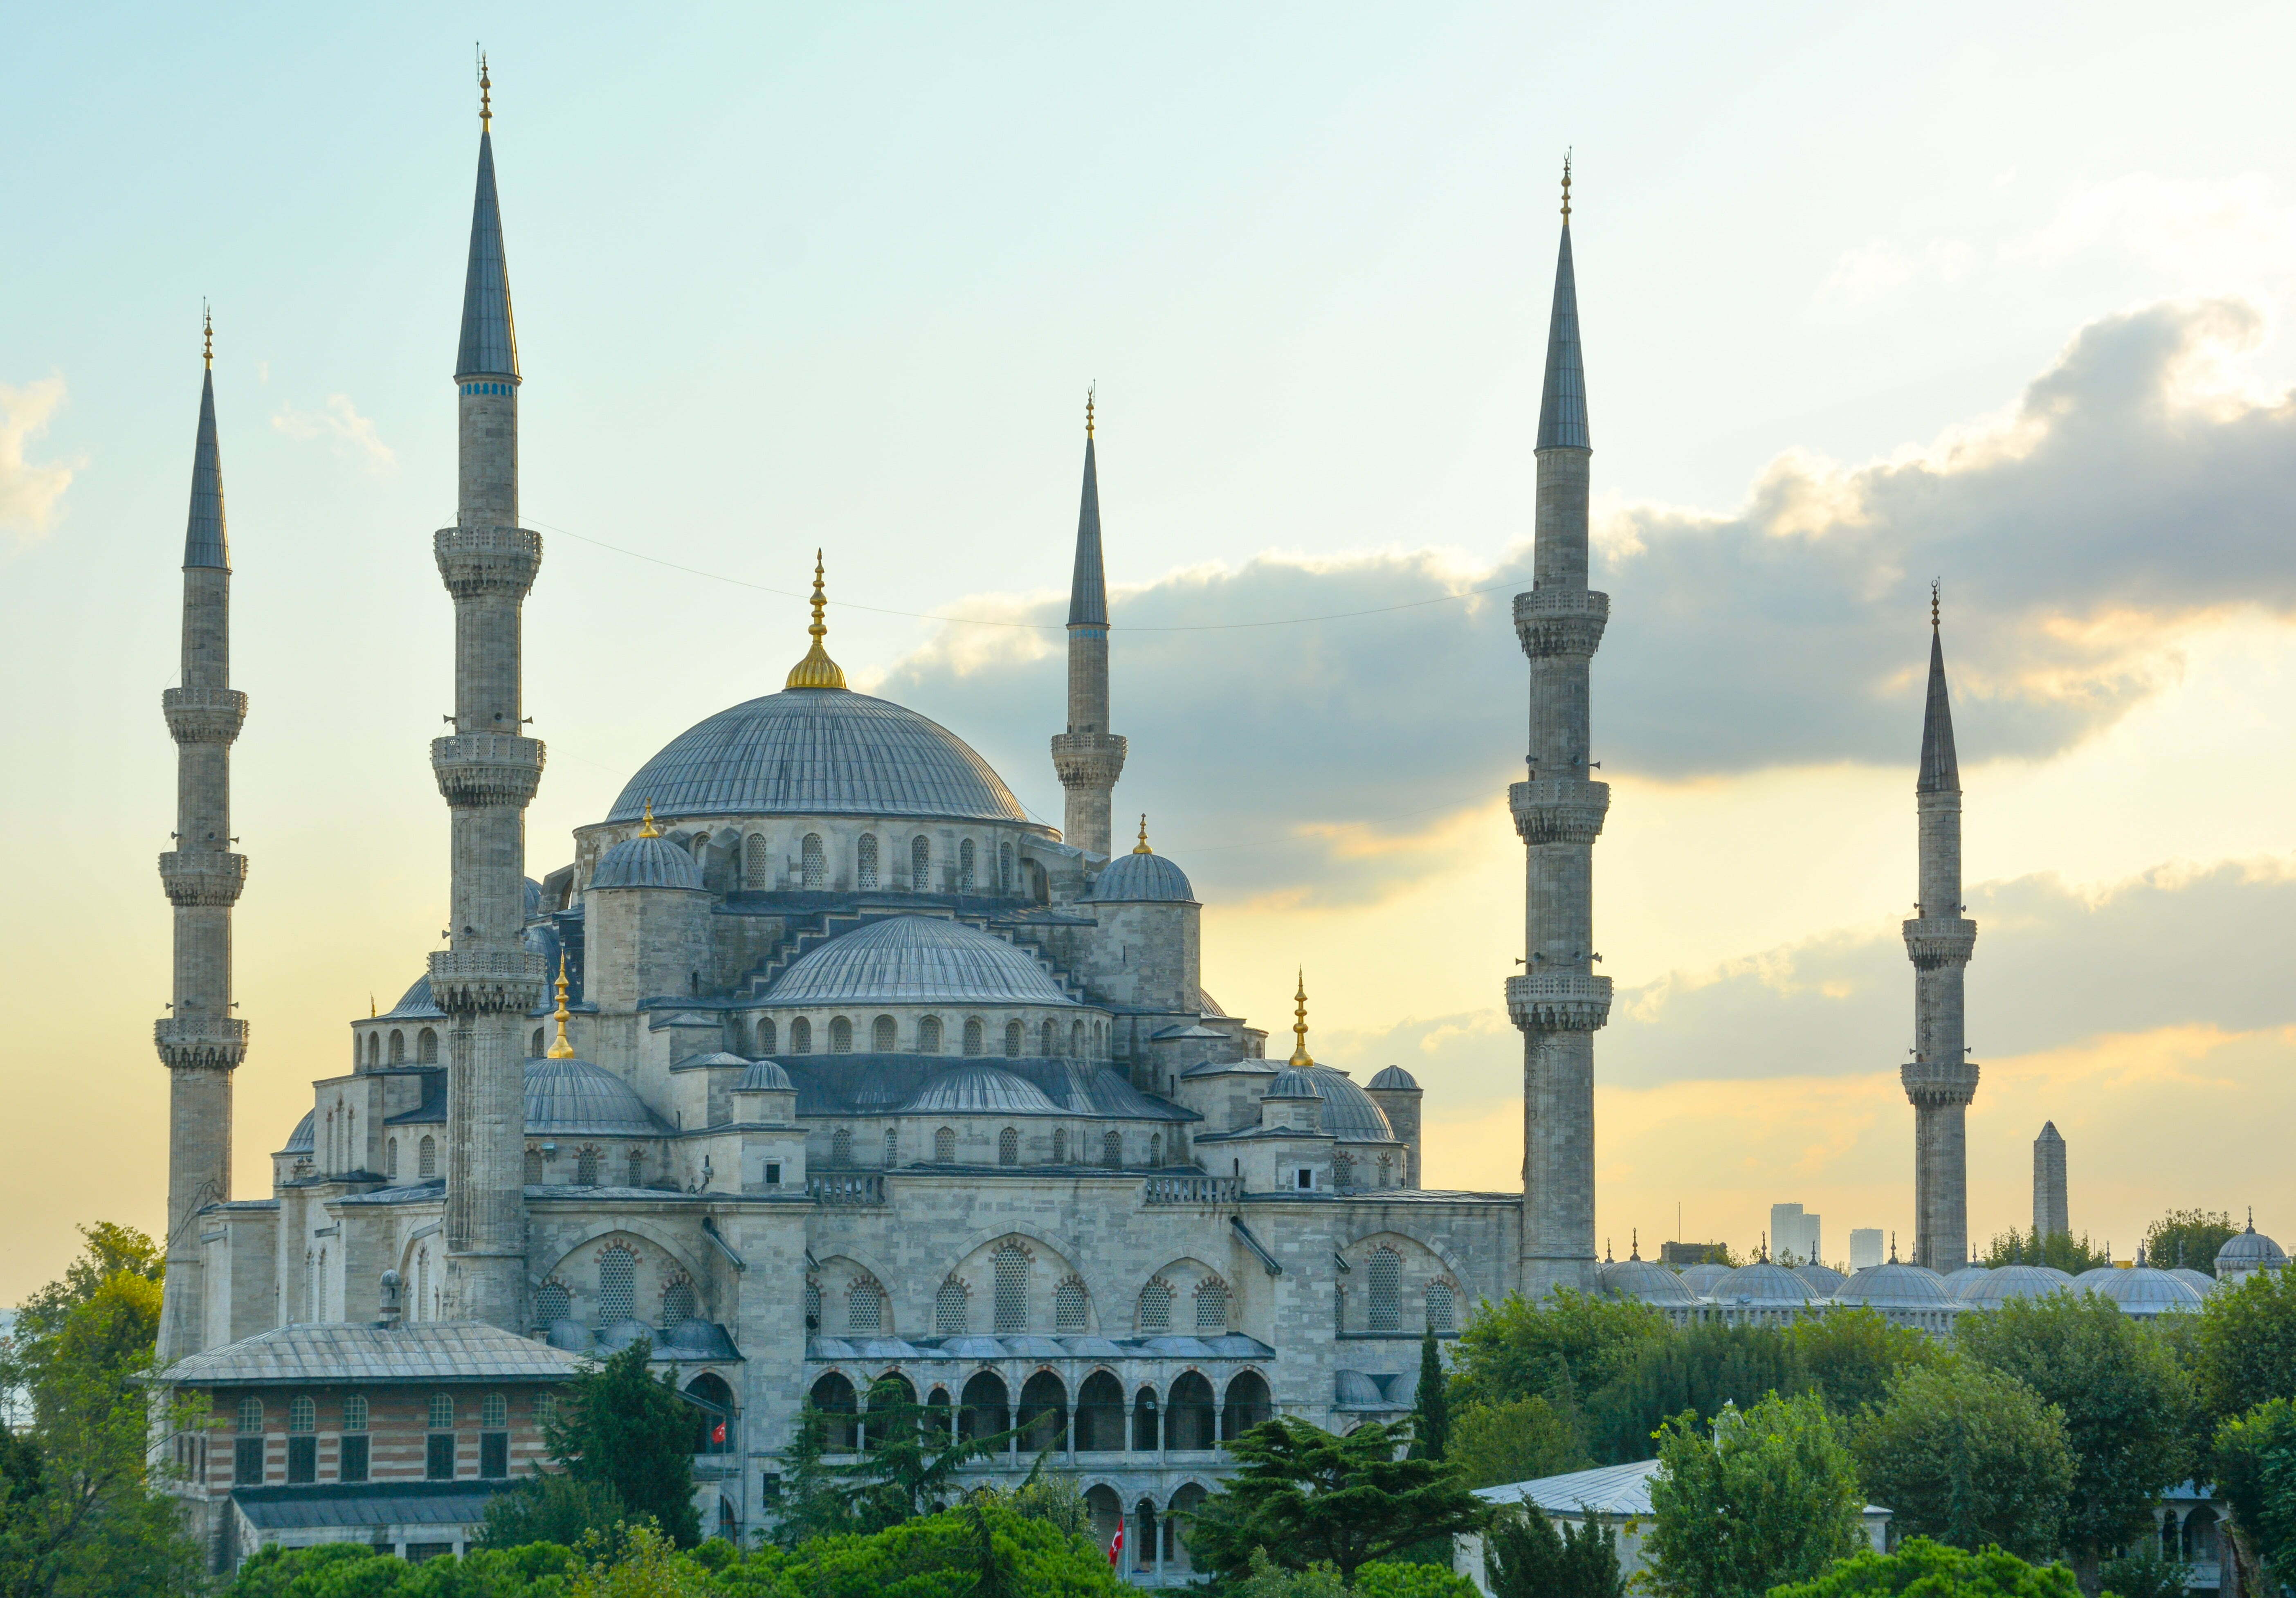 รูปภาพ : เที่ยวตุรกี อิสตันบูล สุเหร่าสีน้ำเงิน (Blue Mosque)